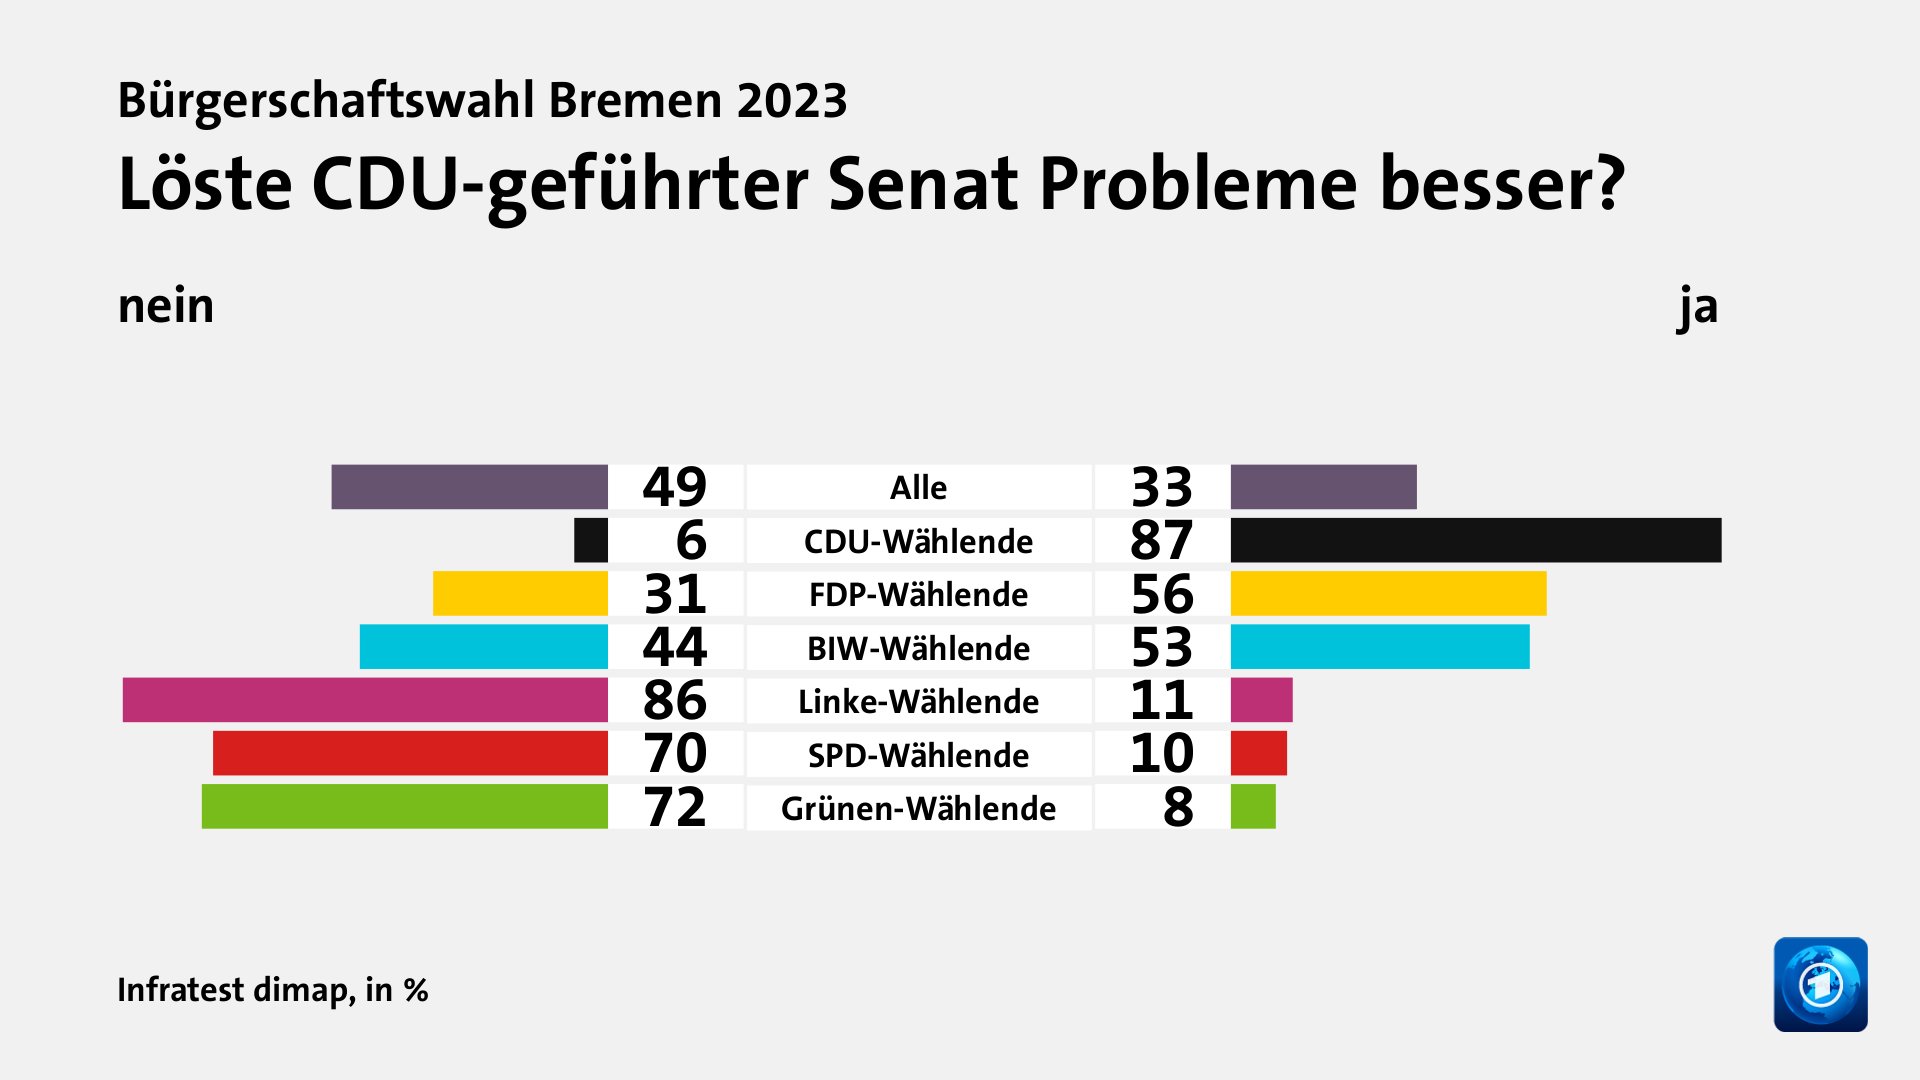 Löste CDU-geführter Senat Probleme besser? (in %) Alle: nein 49, ja 33; CDU-Wählende: nein 6, ja 87; FDP-Wählende: nein 31, ja 56; BIW-Wählende: nein 44, ja 53; Linke-Wählende: nein 86, ja 11; SPD-Wählende: nein 70, ja 10; Grünen-Wählende: nein 72, ja 8; Quelle: Infratest dimap